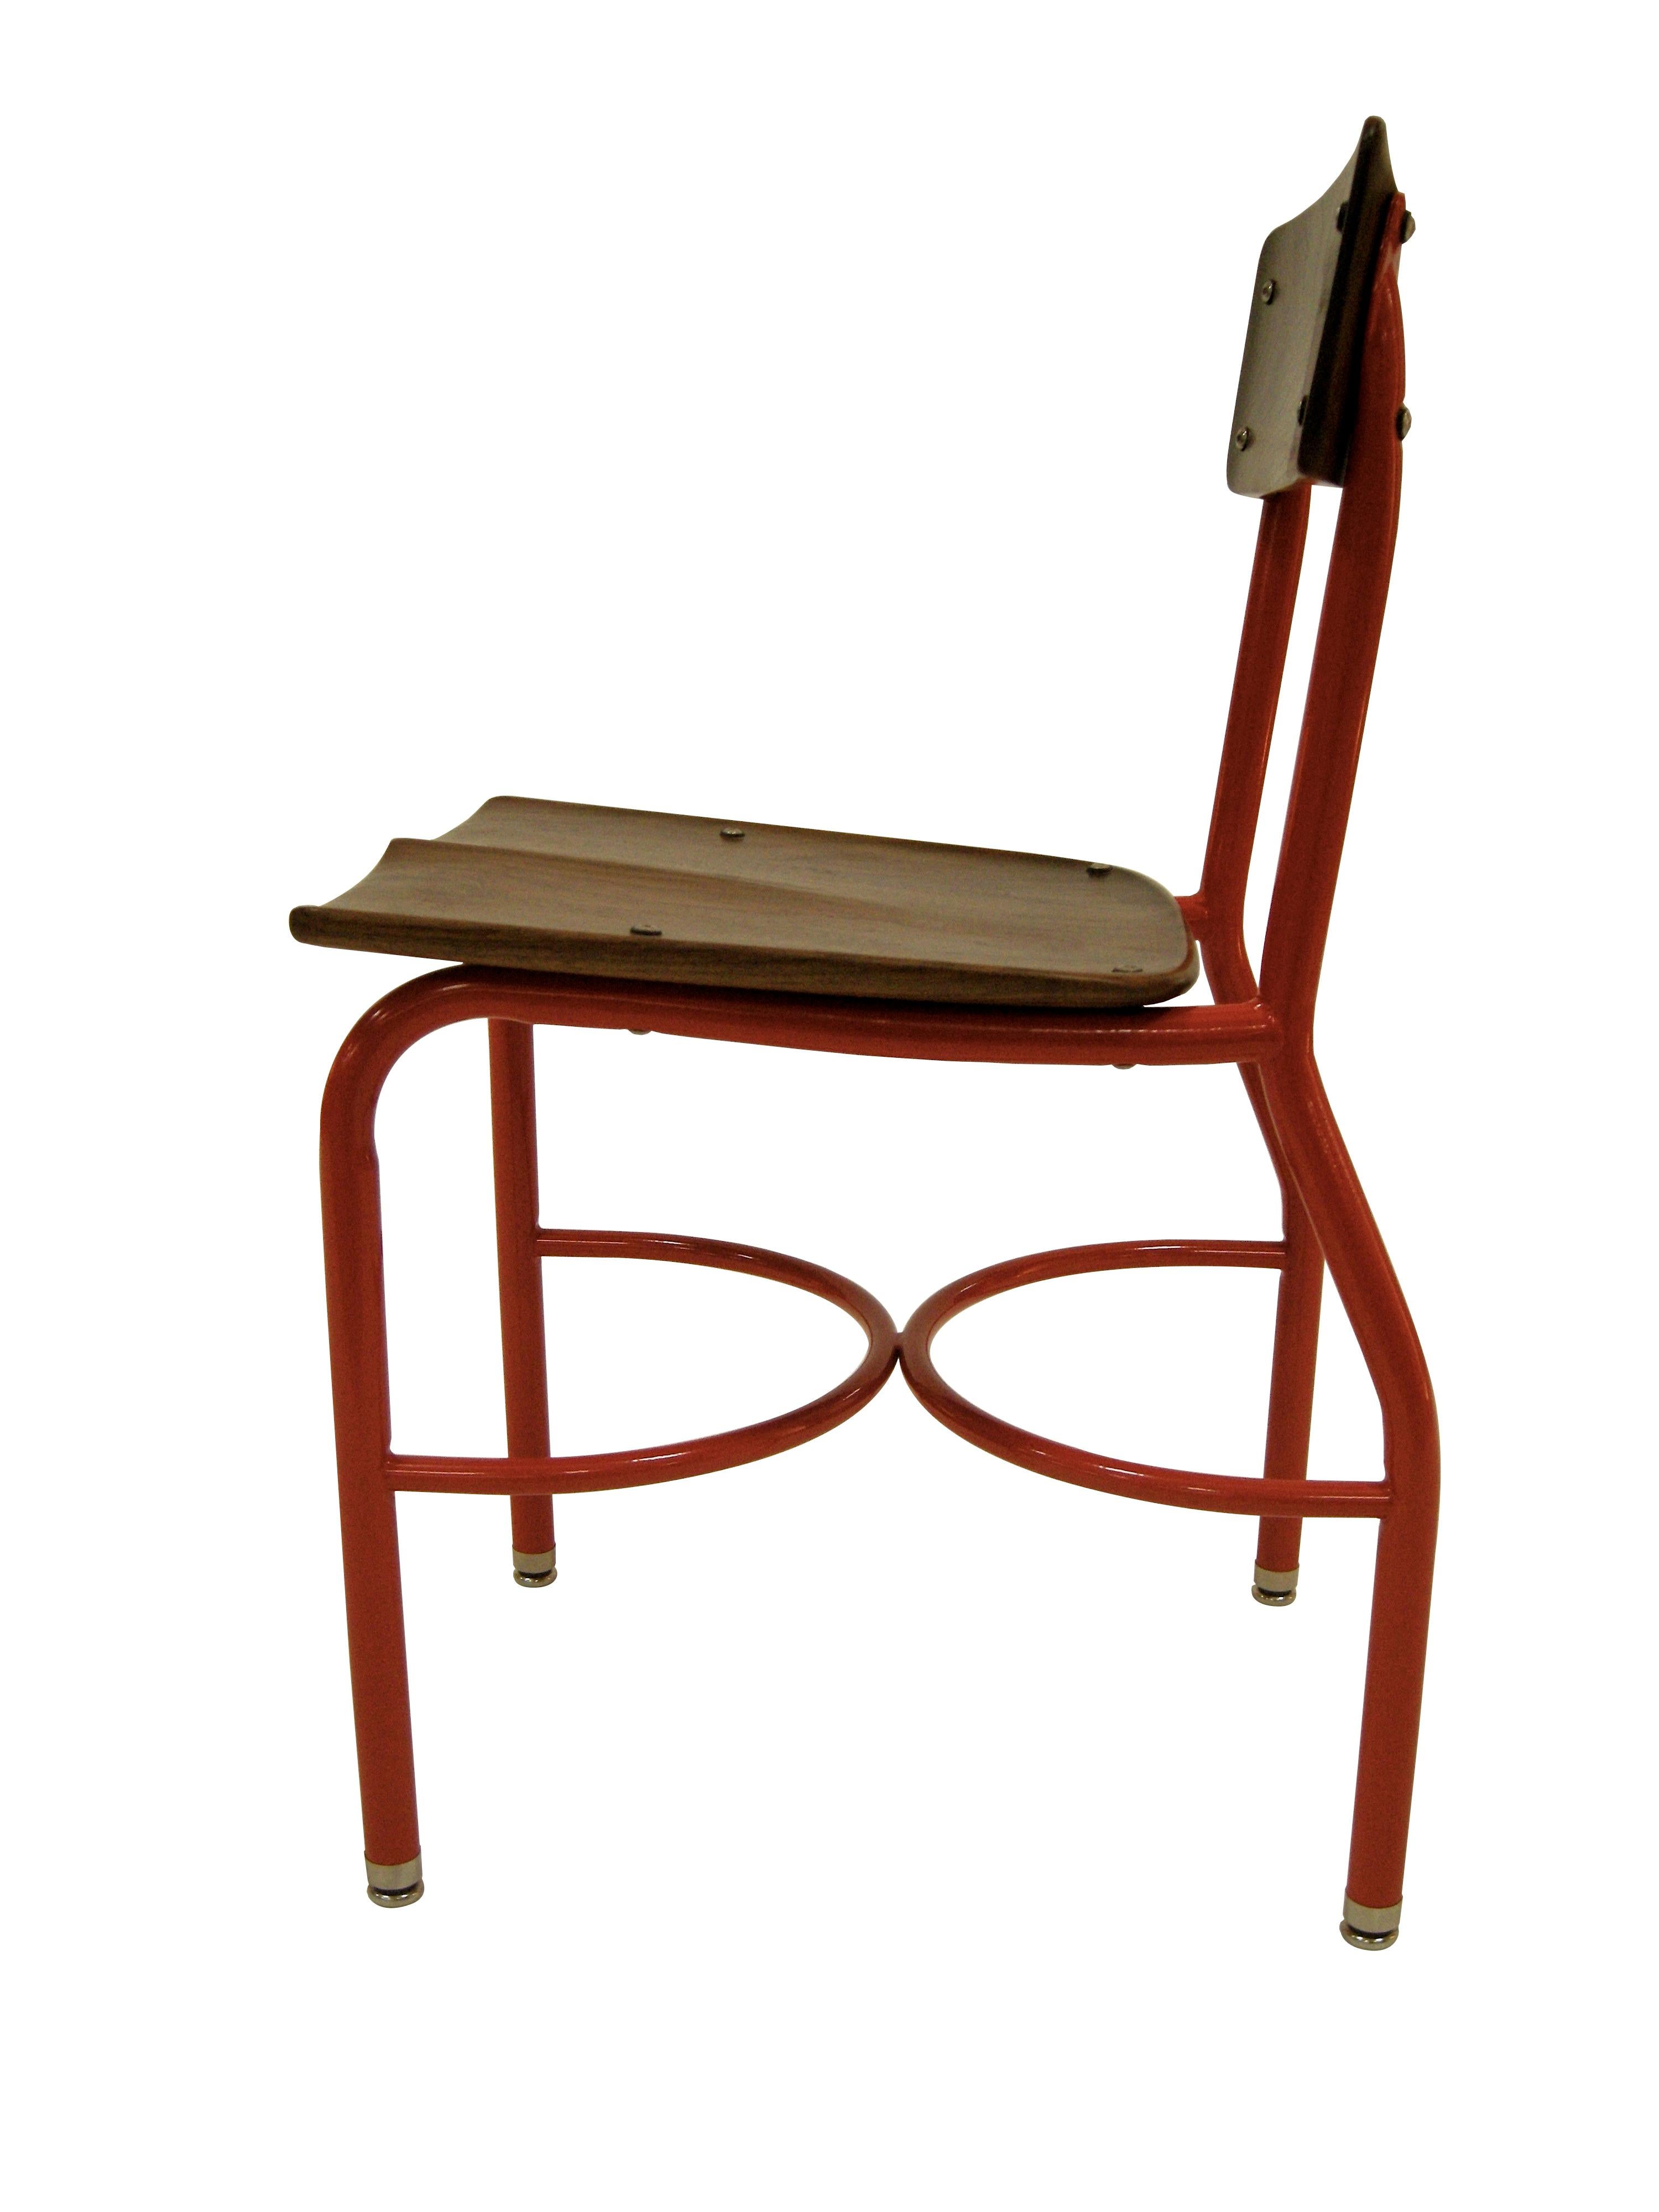 Dieser gefundene alte Schulhausstuhl wurde zu einem modernen Beistellstuhl umgestaltet. Der Rahmen wurde entlackt und anschließend rot pulverbeschichtet, als Anspielung auf die roten Einzimmer-Schulhäuser